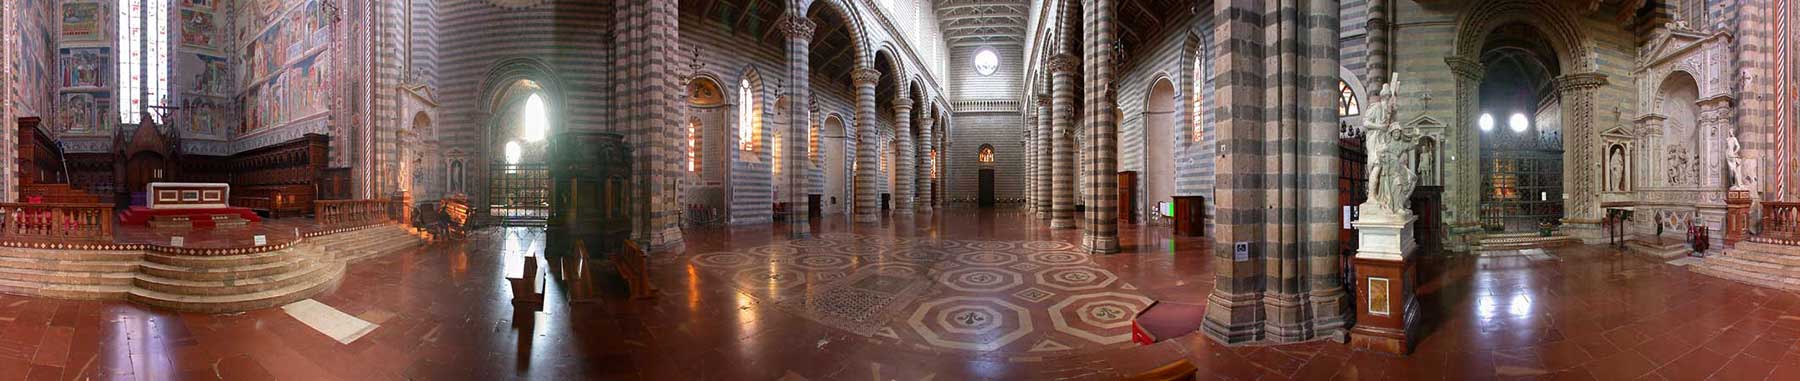 interno del Duomo di Orvieto